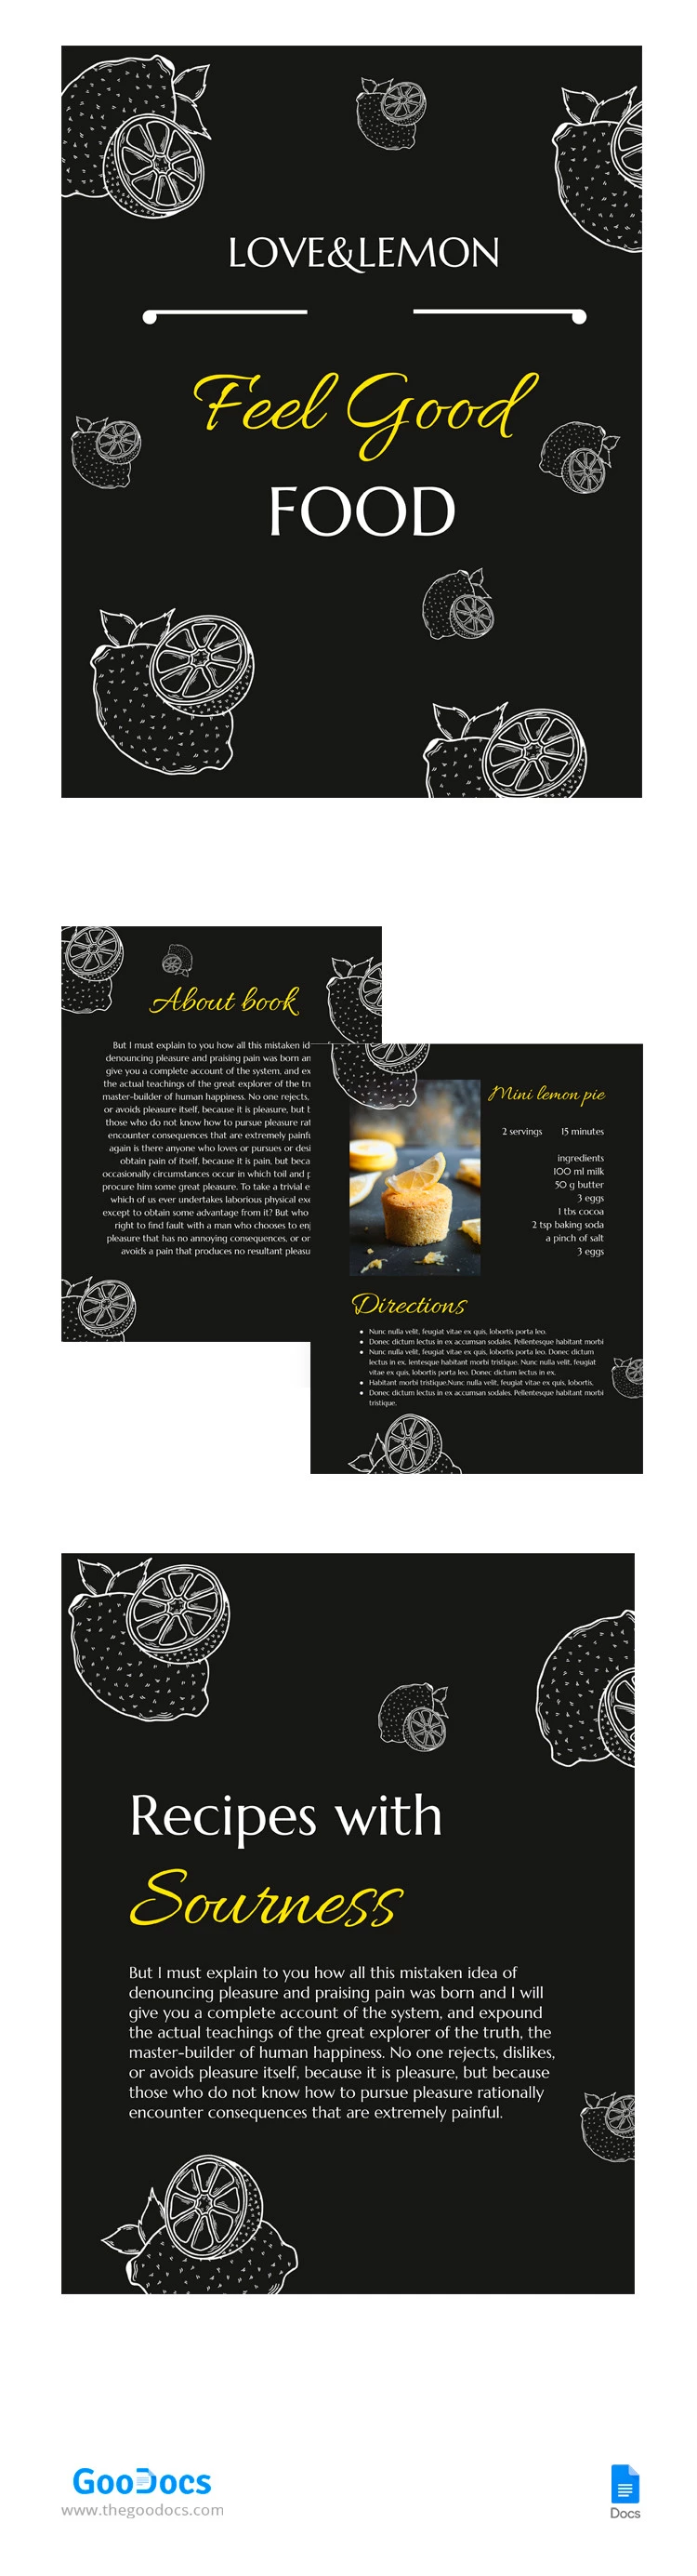 Libro de recetas de limón - free Google Docs Template - 10065675